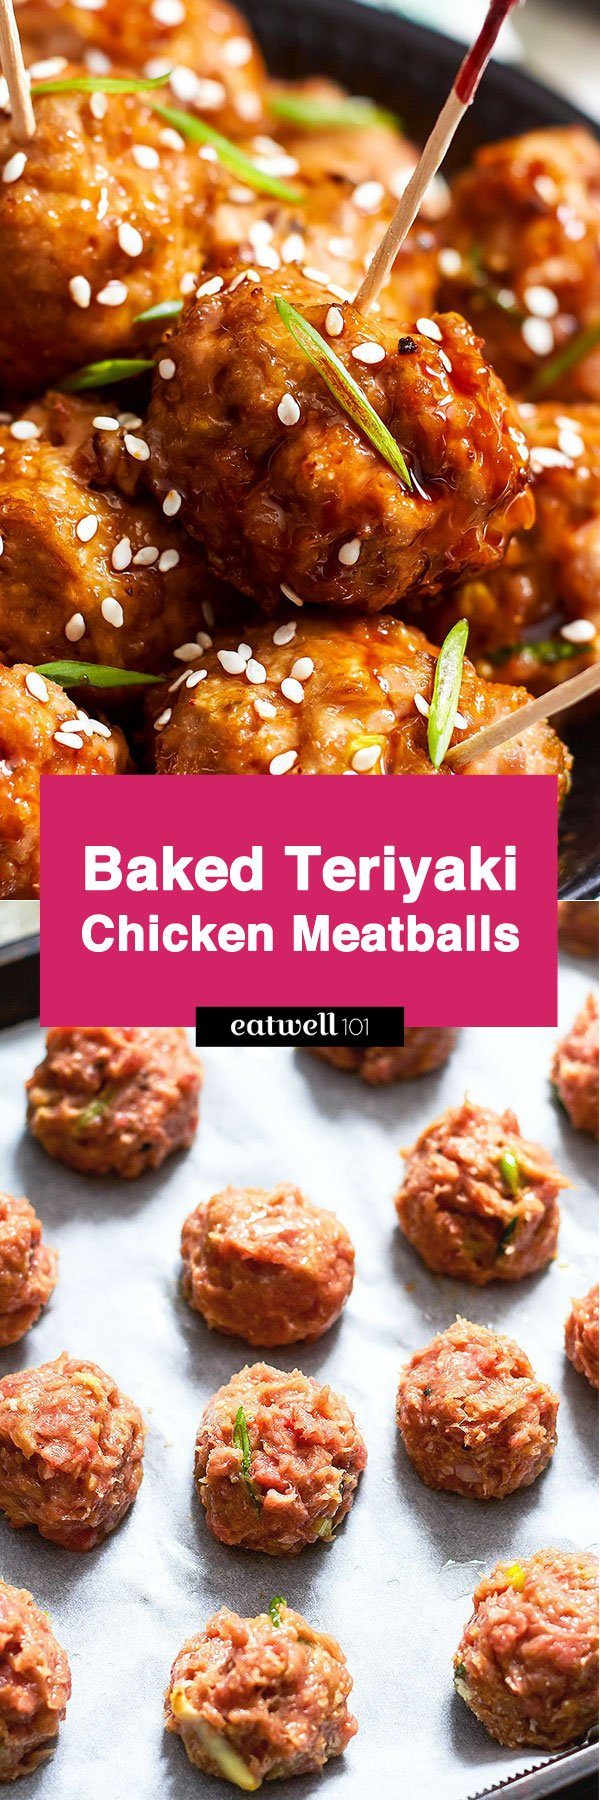 Baked Teriyaki Chicken Meatballs - #teriyaki #chicken #meatballs #recipe #eatwell101 - These Baked Teriyaki Chicken Meatballs are the perfect appetizer for your next backyard bash.